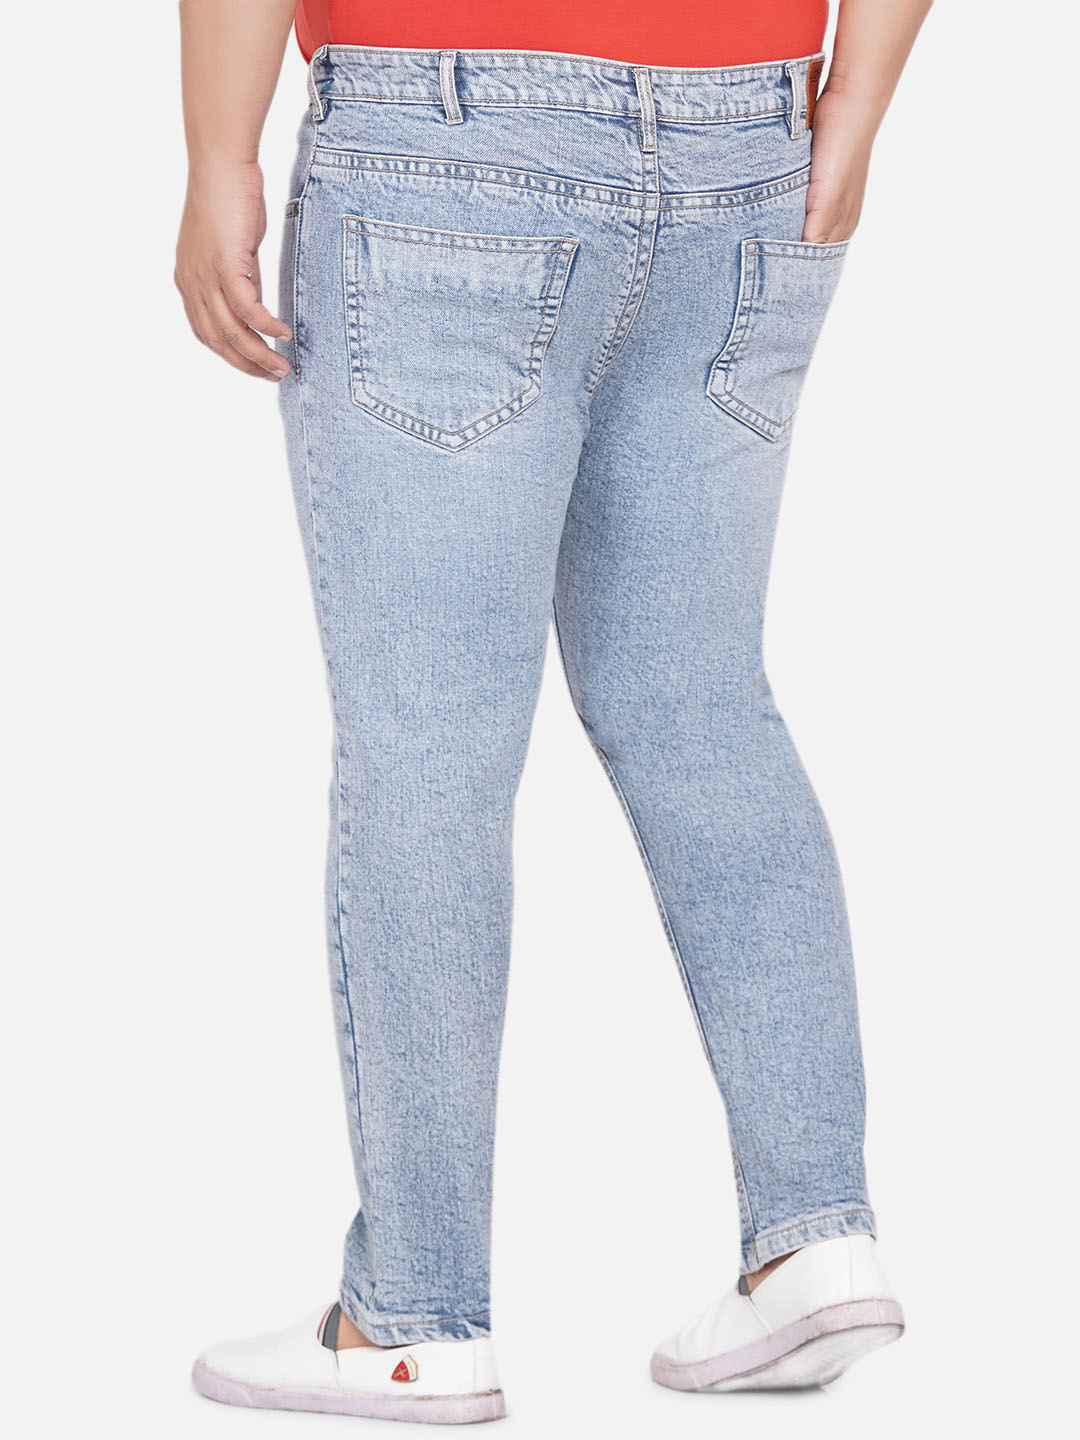 bottomwear/jeans/PJPJ12253/pjpj12253-5.jpg